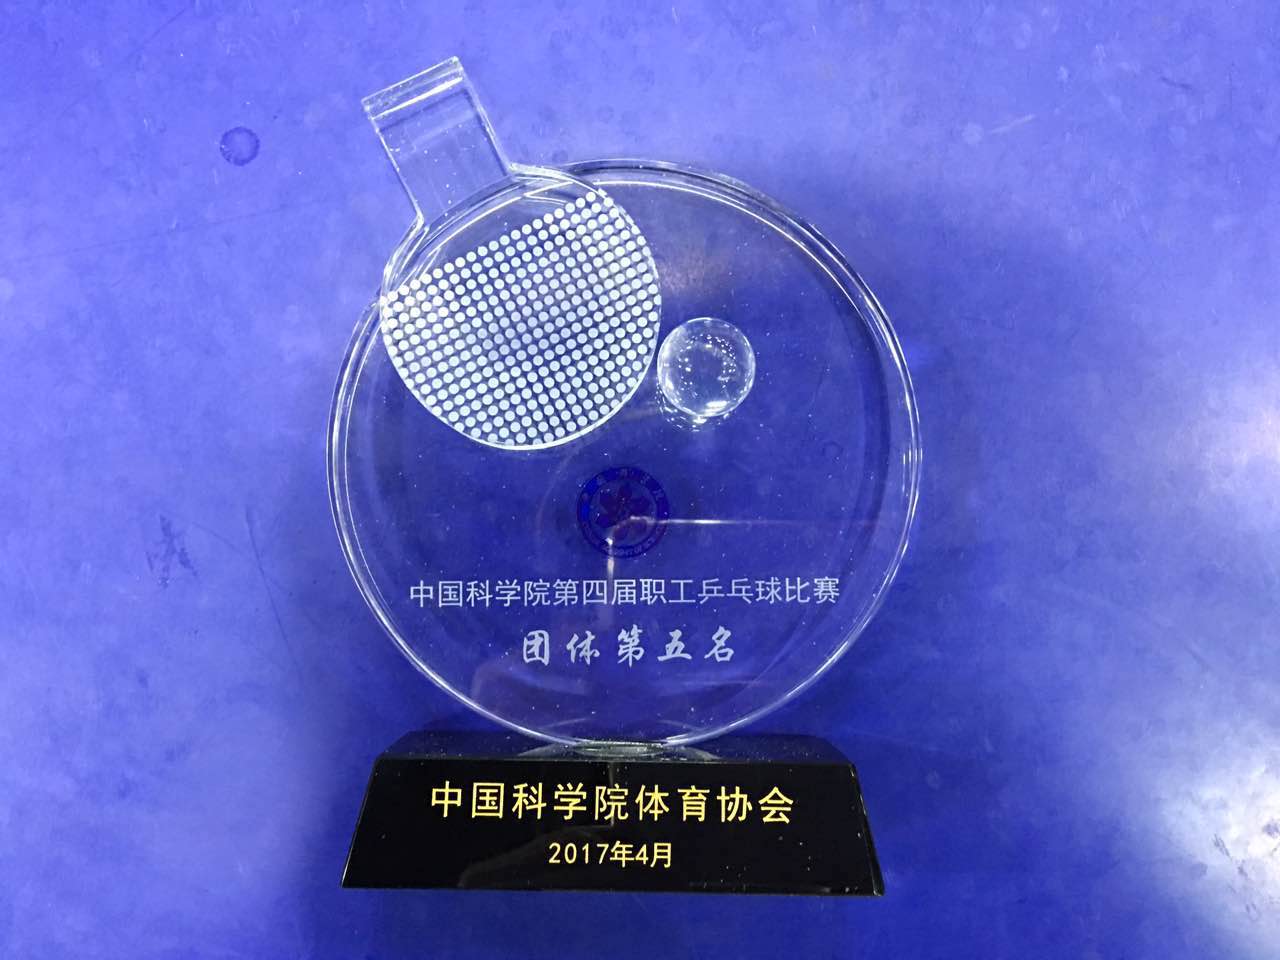 校组队参加中国科学院第四届职工乒乓球比赛|